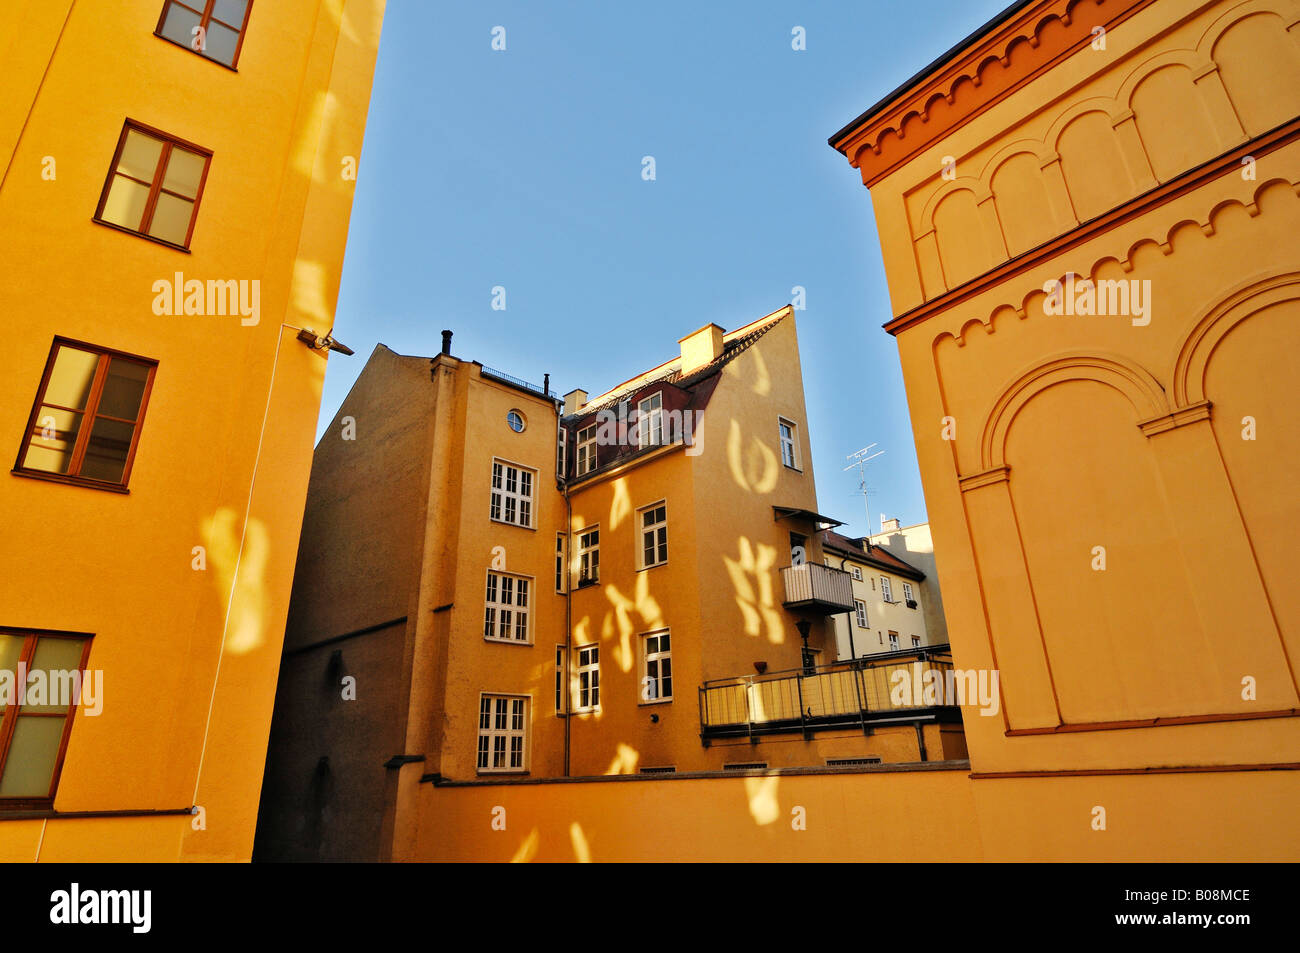 La lumière reflétée dans une cour intérieure, appartement jaune des bâtiments, la Maximilianstrasse, Munich, Bavière, Allemagne Banque D'Images